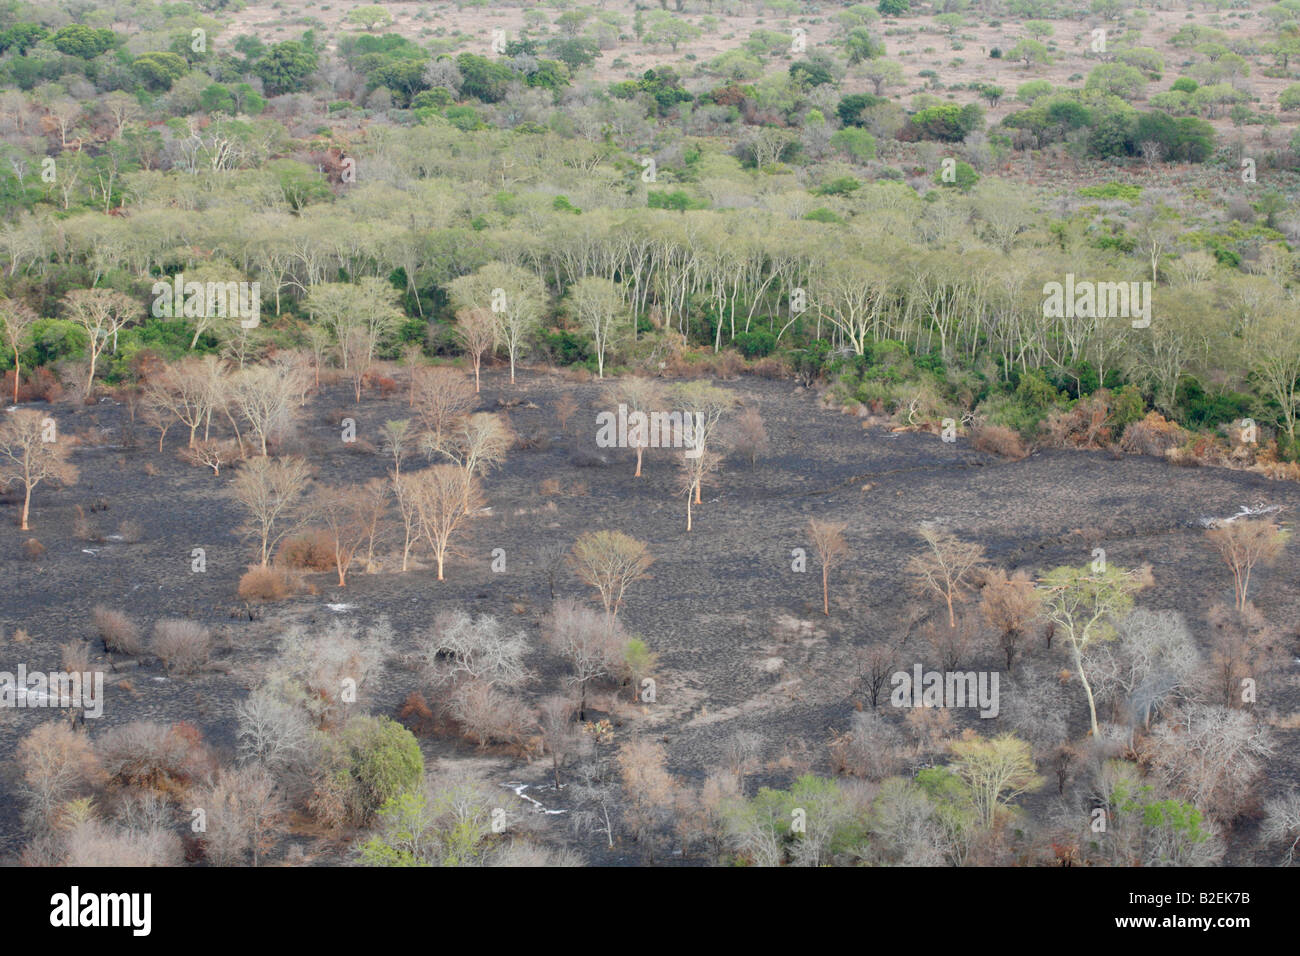 Vue aérienne d'une zone humide avec une frange d'arbres de la fièvre qui a été brûlé en préparation pour la culture Banque D'Images